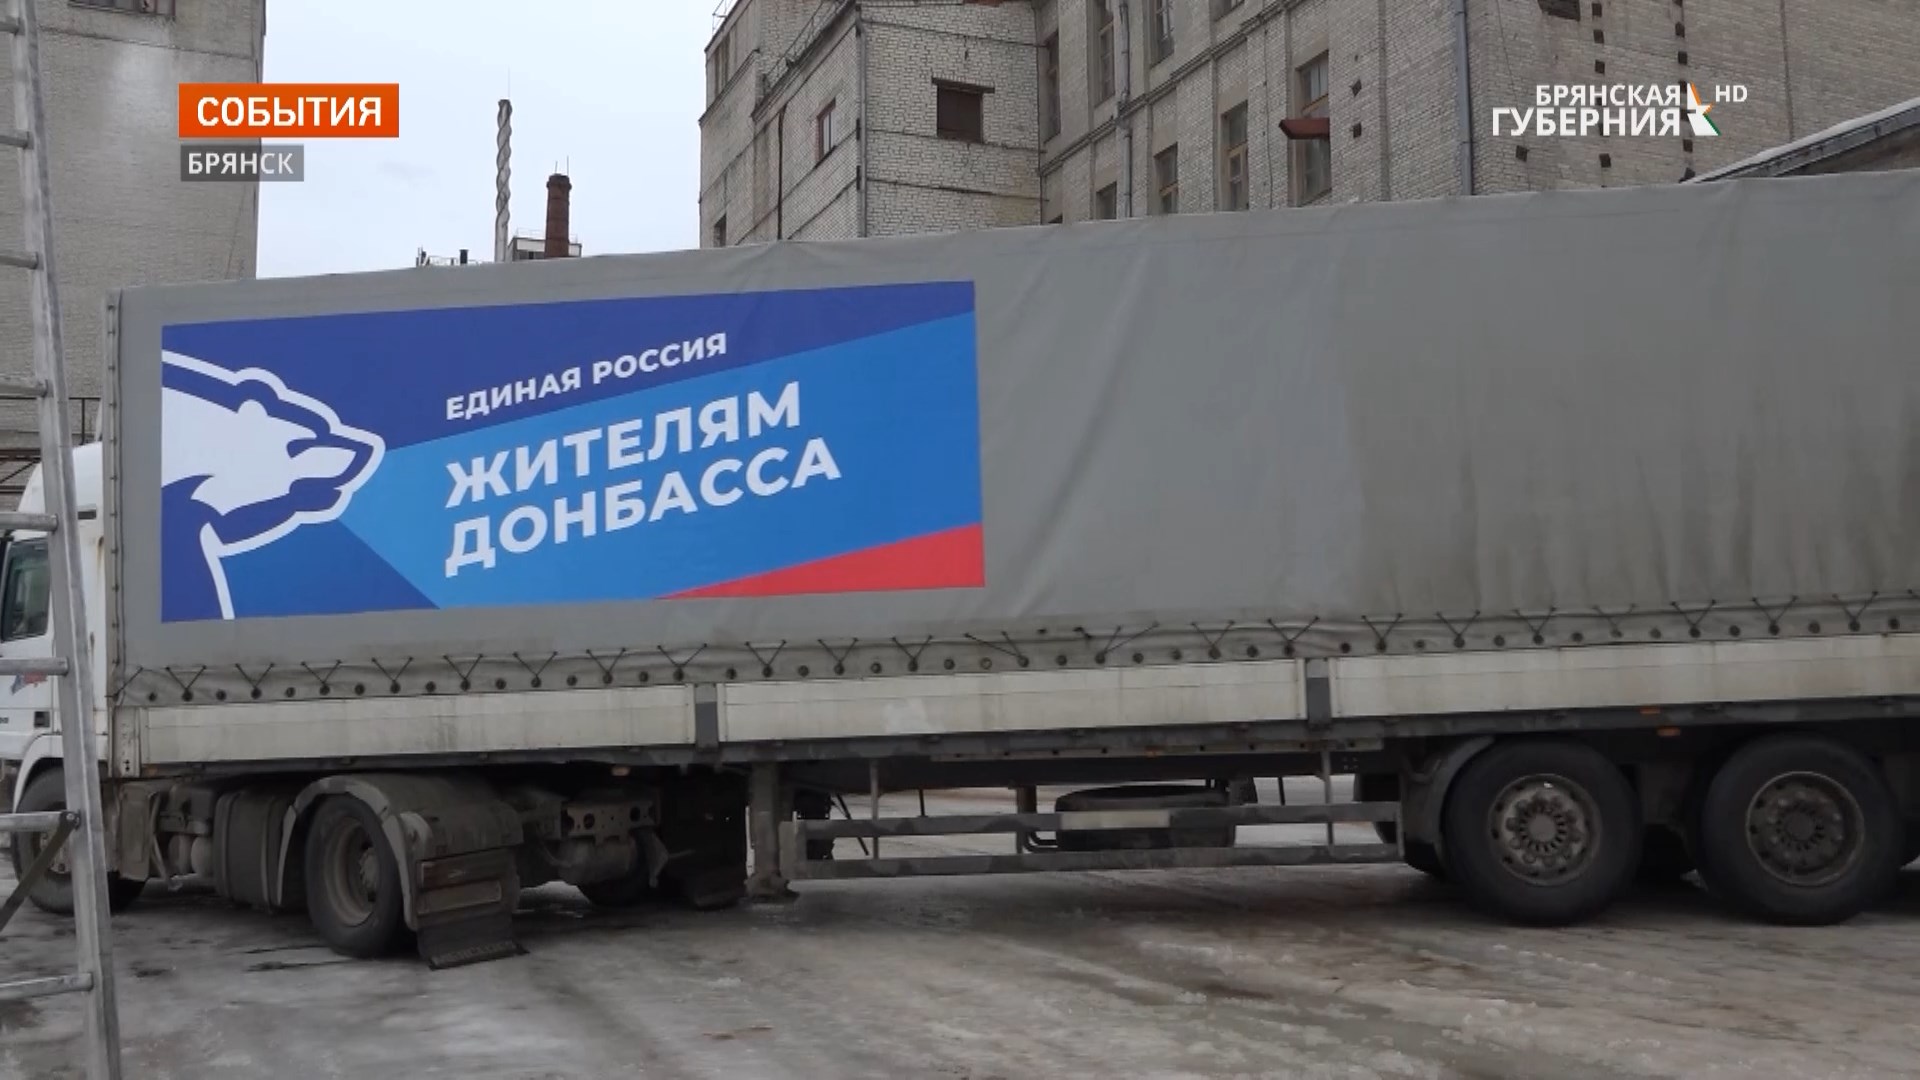 Брянская область оперативно включилась во всероссийскую акцию помощи жителям ДНР и ЛНР